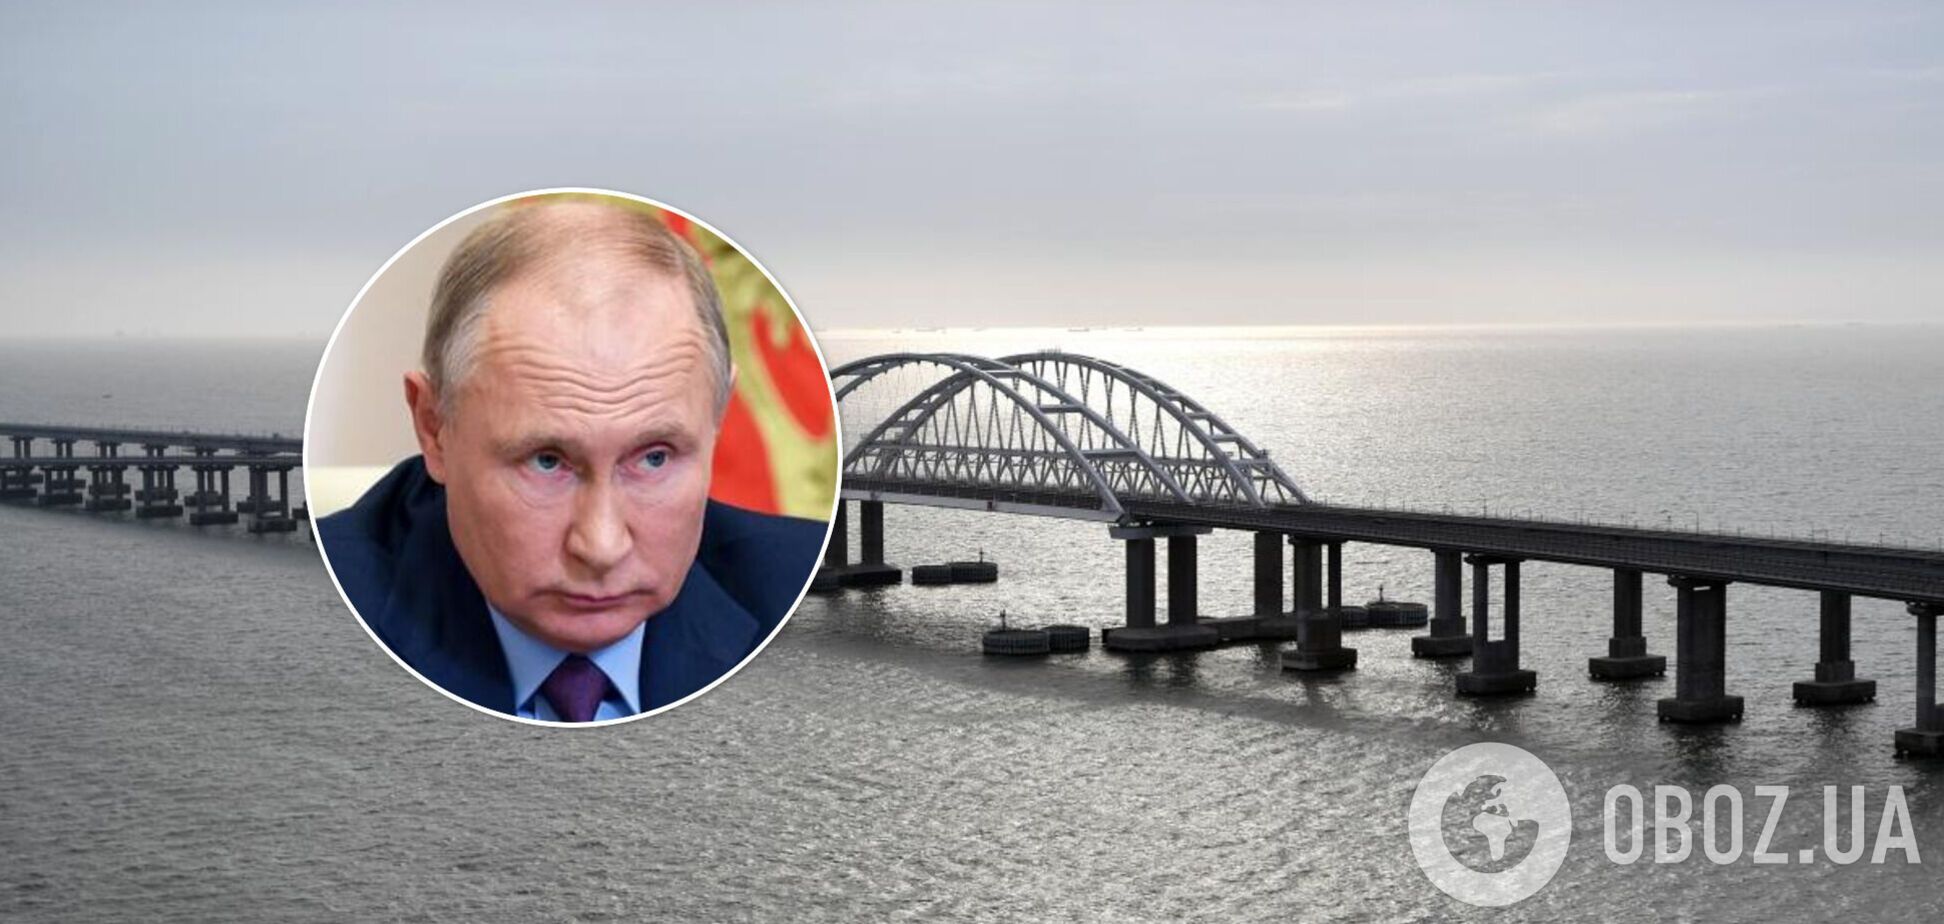 Путин официально разрешил войскам блокировать проход в Керченском проливе